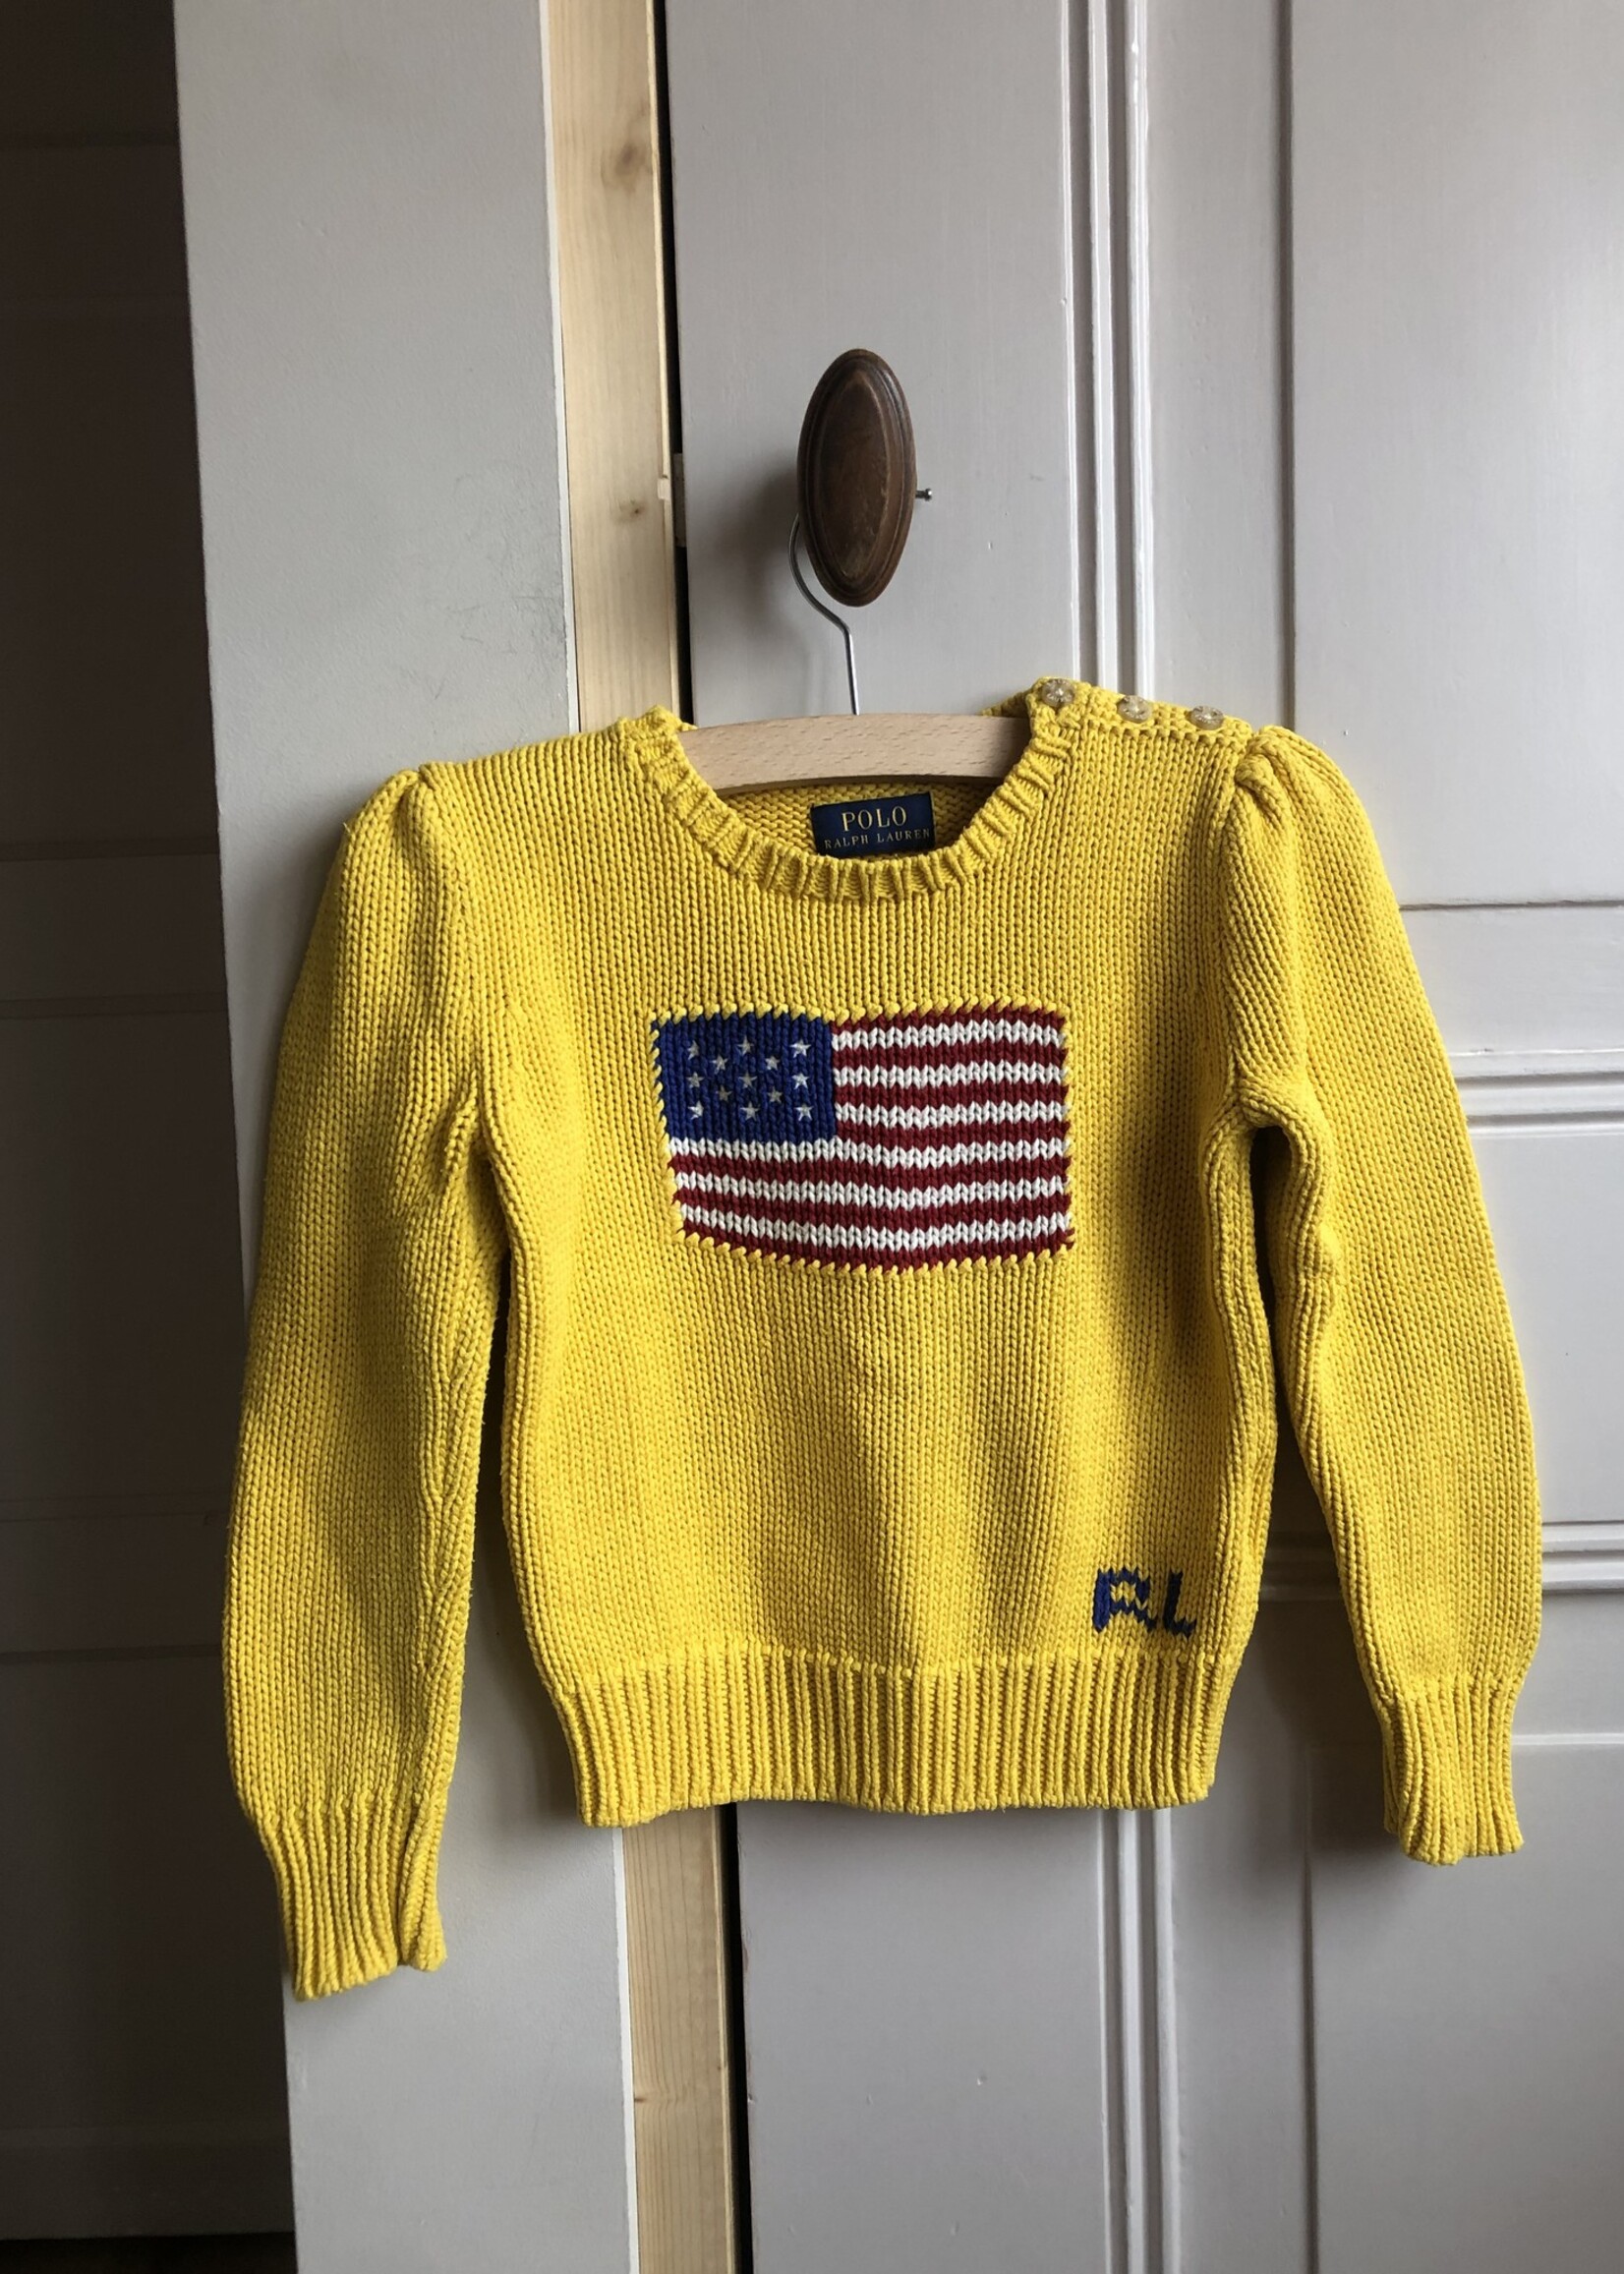 Ralph Lauren Yellow USA cotton knit jumper 3-4